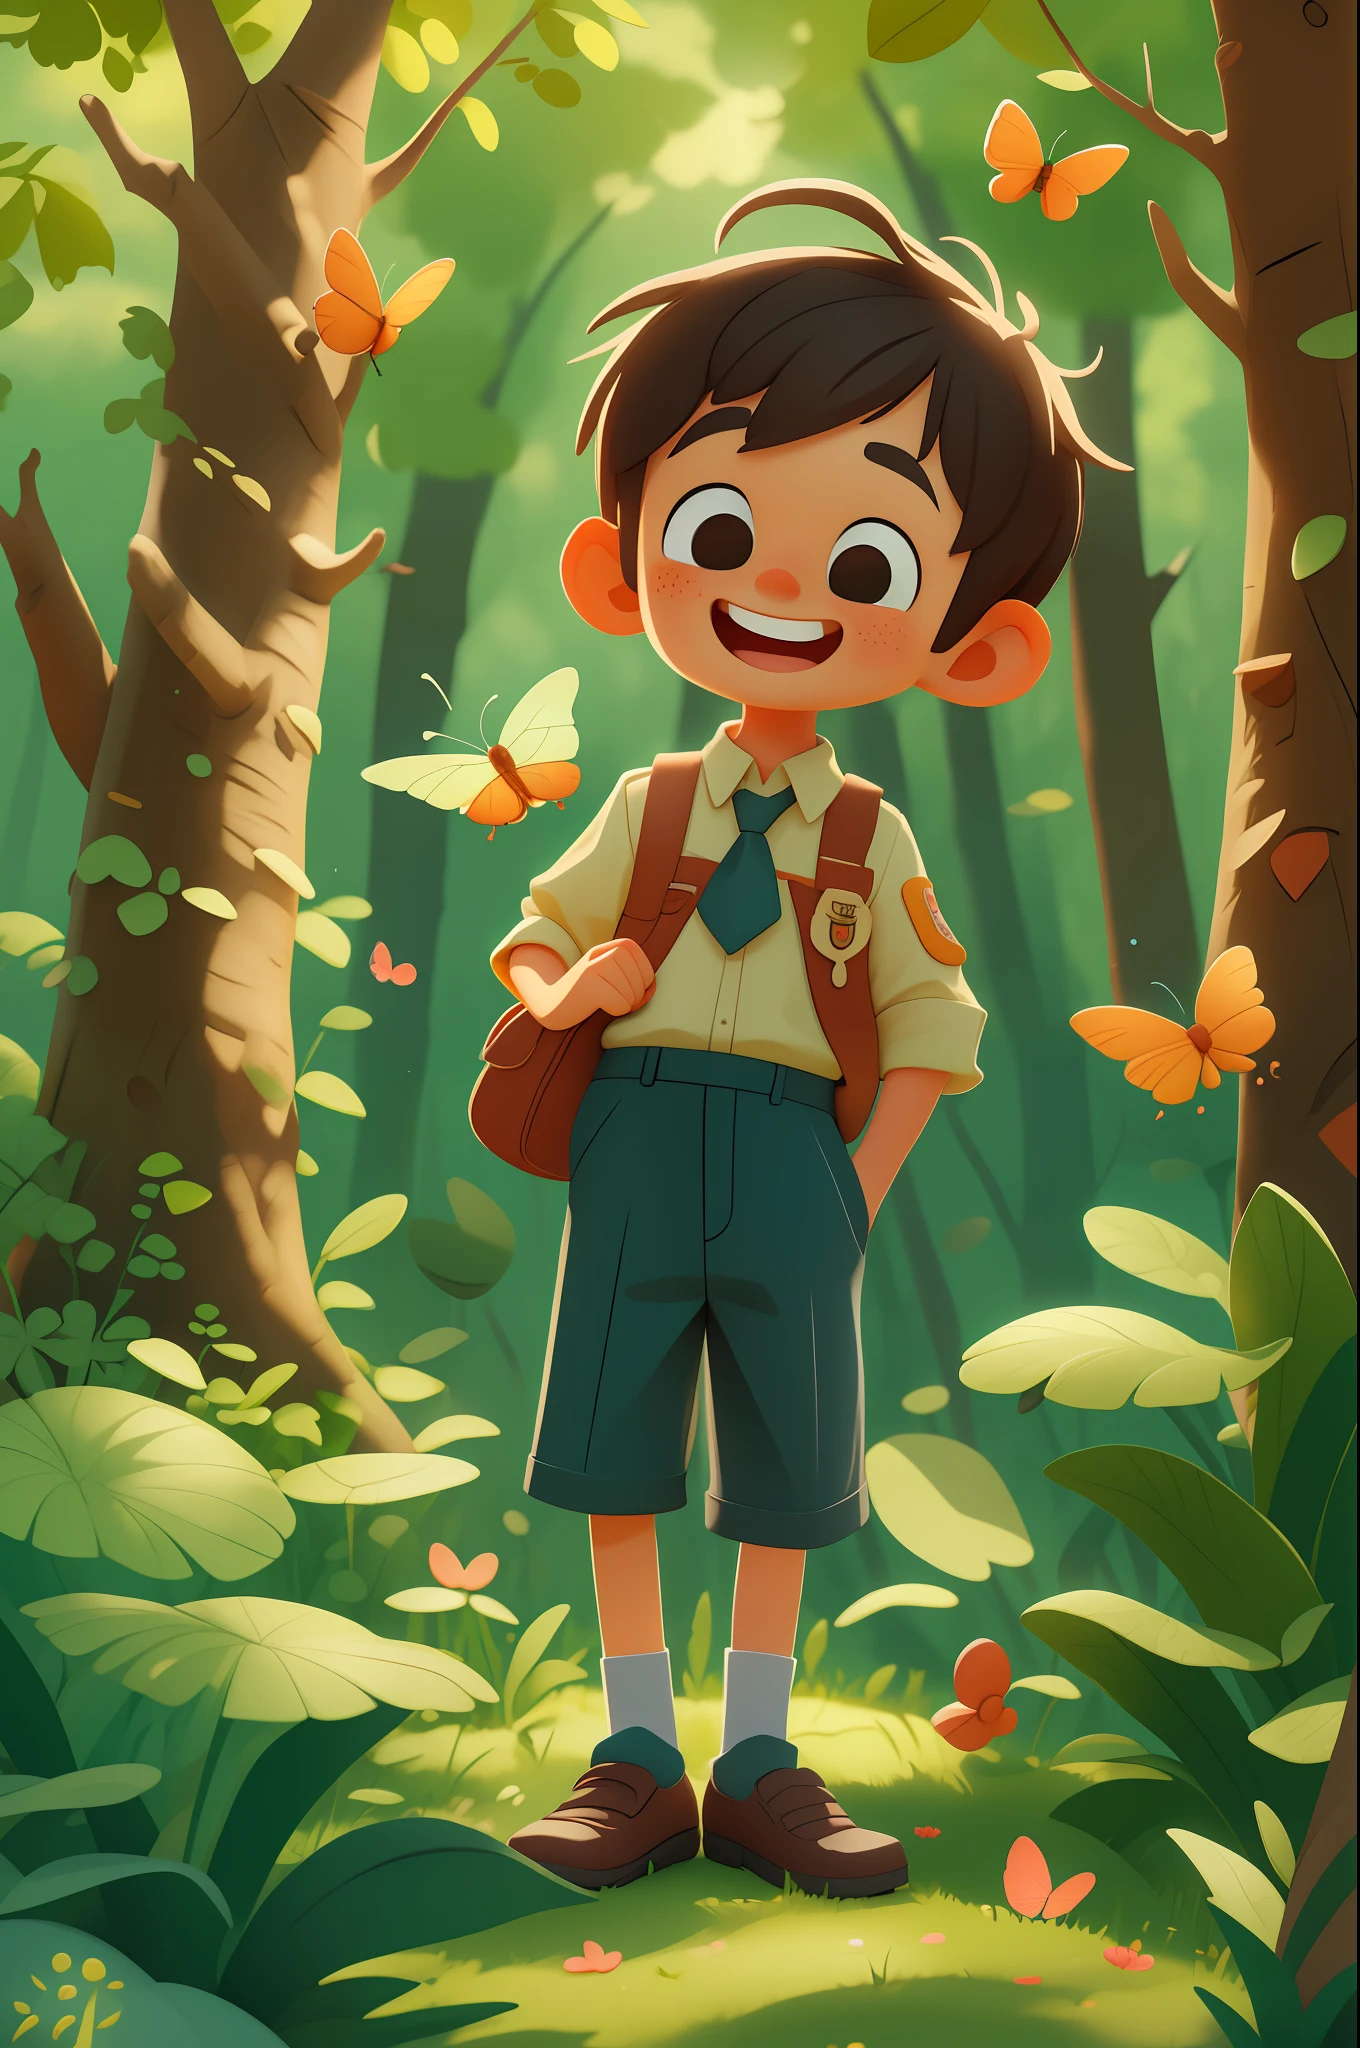 Ein glücklicher süßer Junge mit kurzen Haaren, Das Tragen einer Schuluniform, mit einem Schmetterling spielen, draußen, Wald-Hintergrund, Kind, Ton, Pixar-Stil, 3D, carTon, Detailliertes Gesicht, asymmetrisch